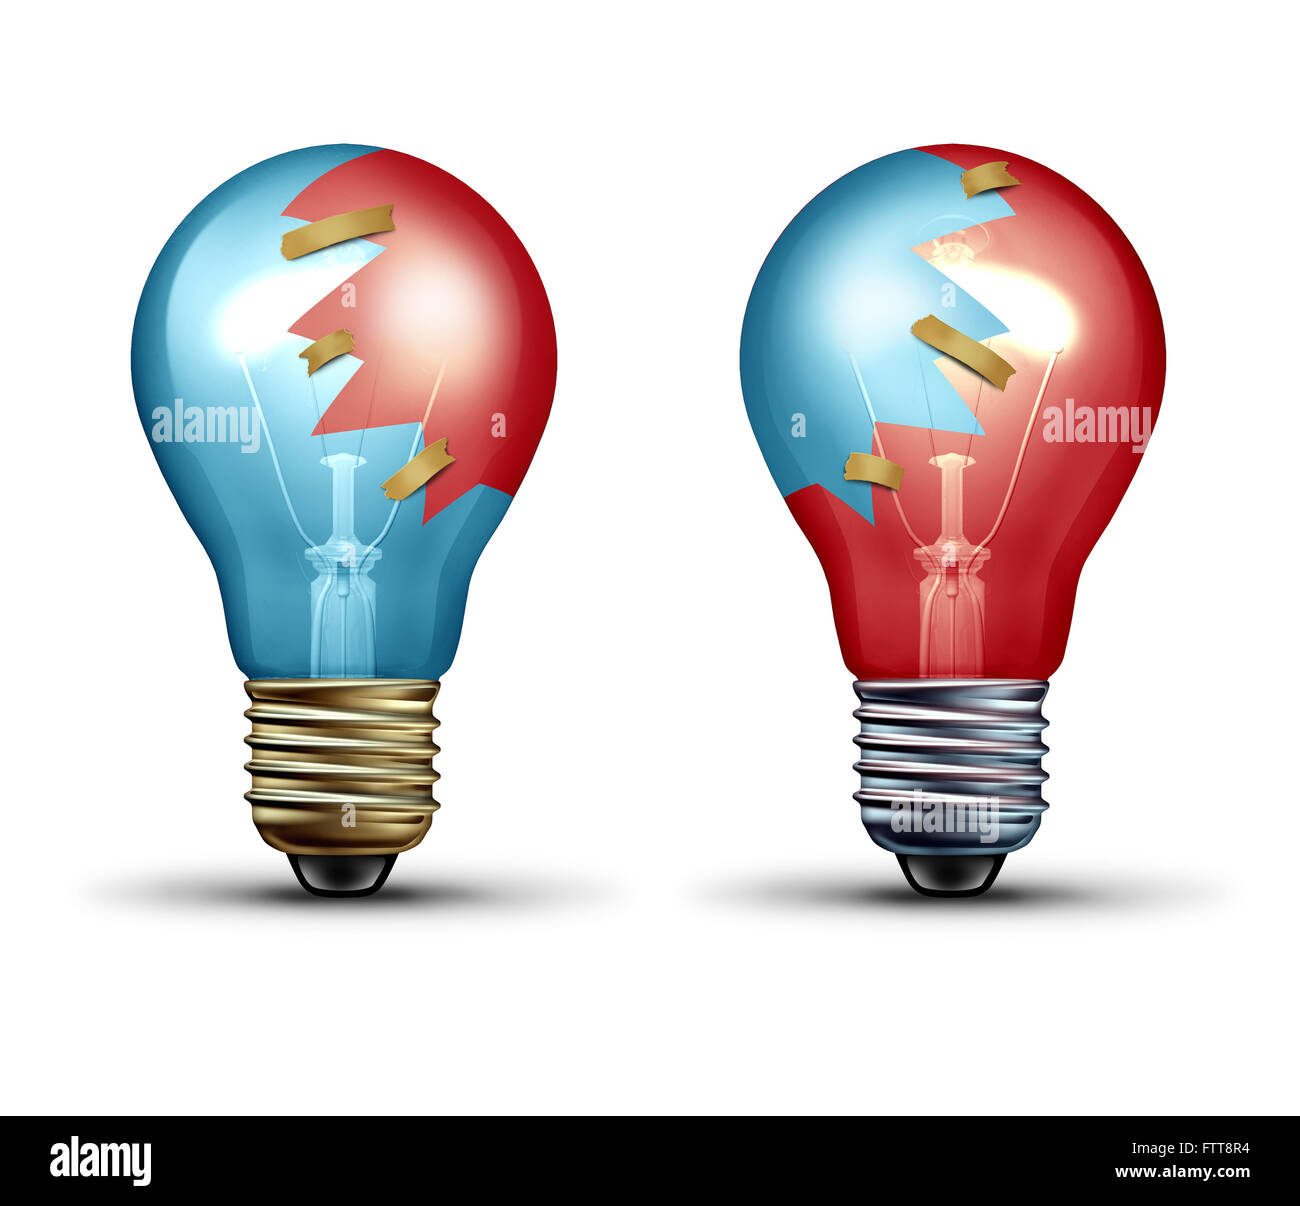 Commerce idée concept comme deux ampoules ampoule ou partagé des icônes avec des morceaux de verre comme une équipe et le leadership symbole représentant travaillant ensemble en tant qu'équipe créative en partenariat. Banque D'Images